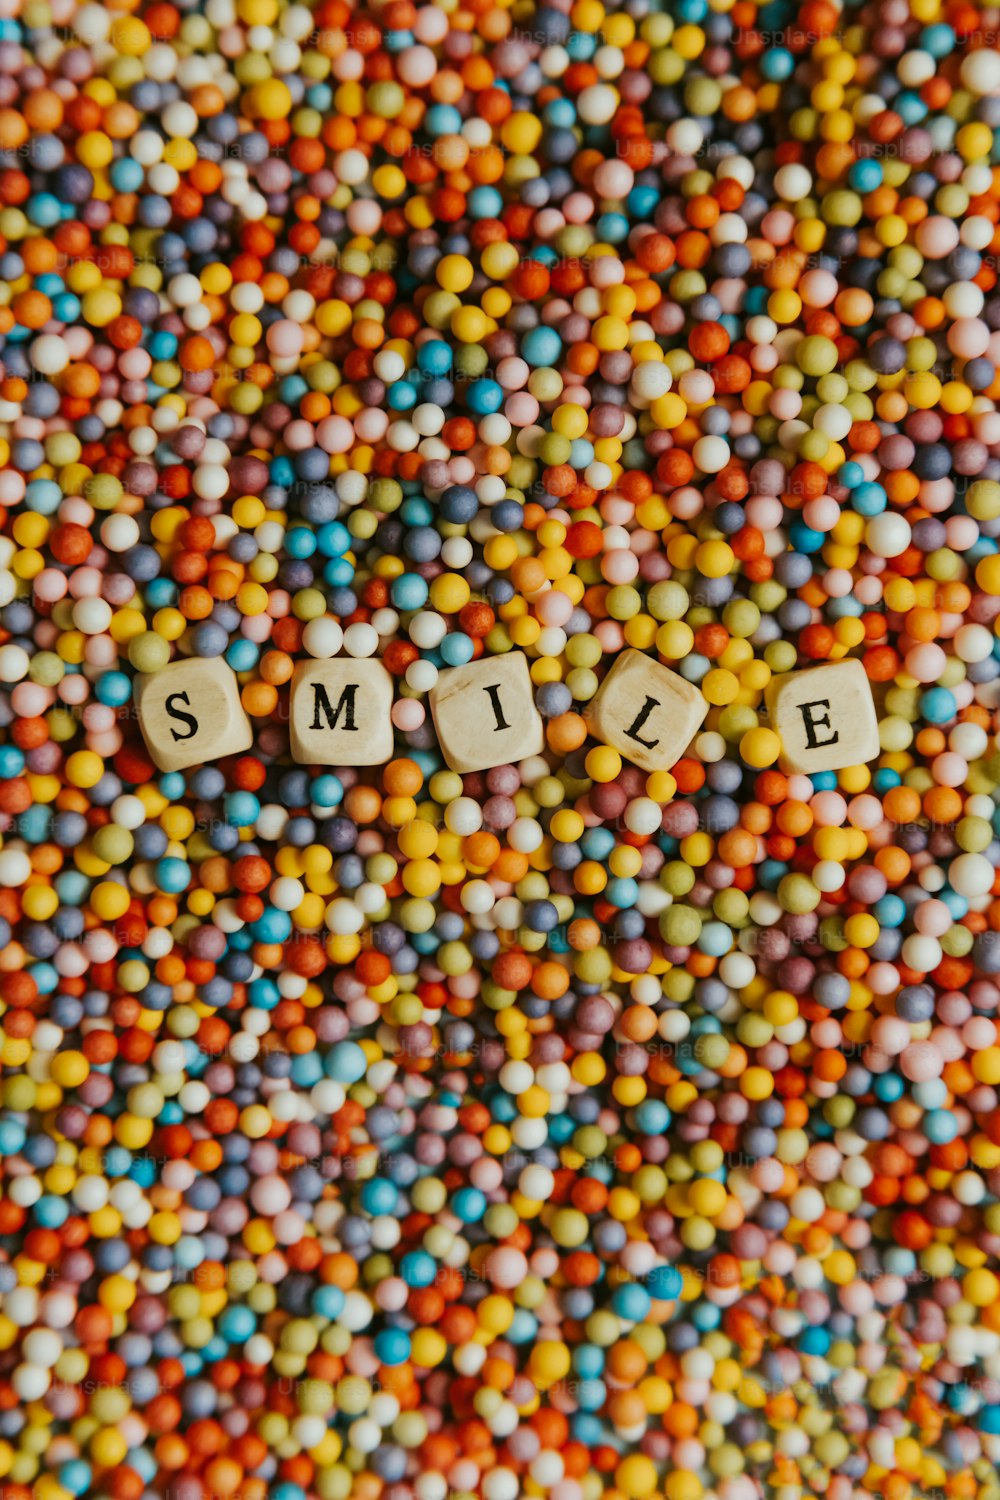 La palabra sonrisa escrita en letras minúsculas rodeadas de caramelos